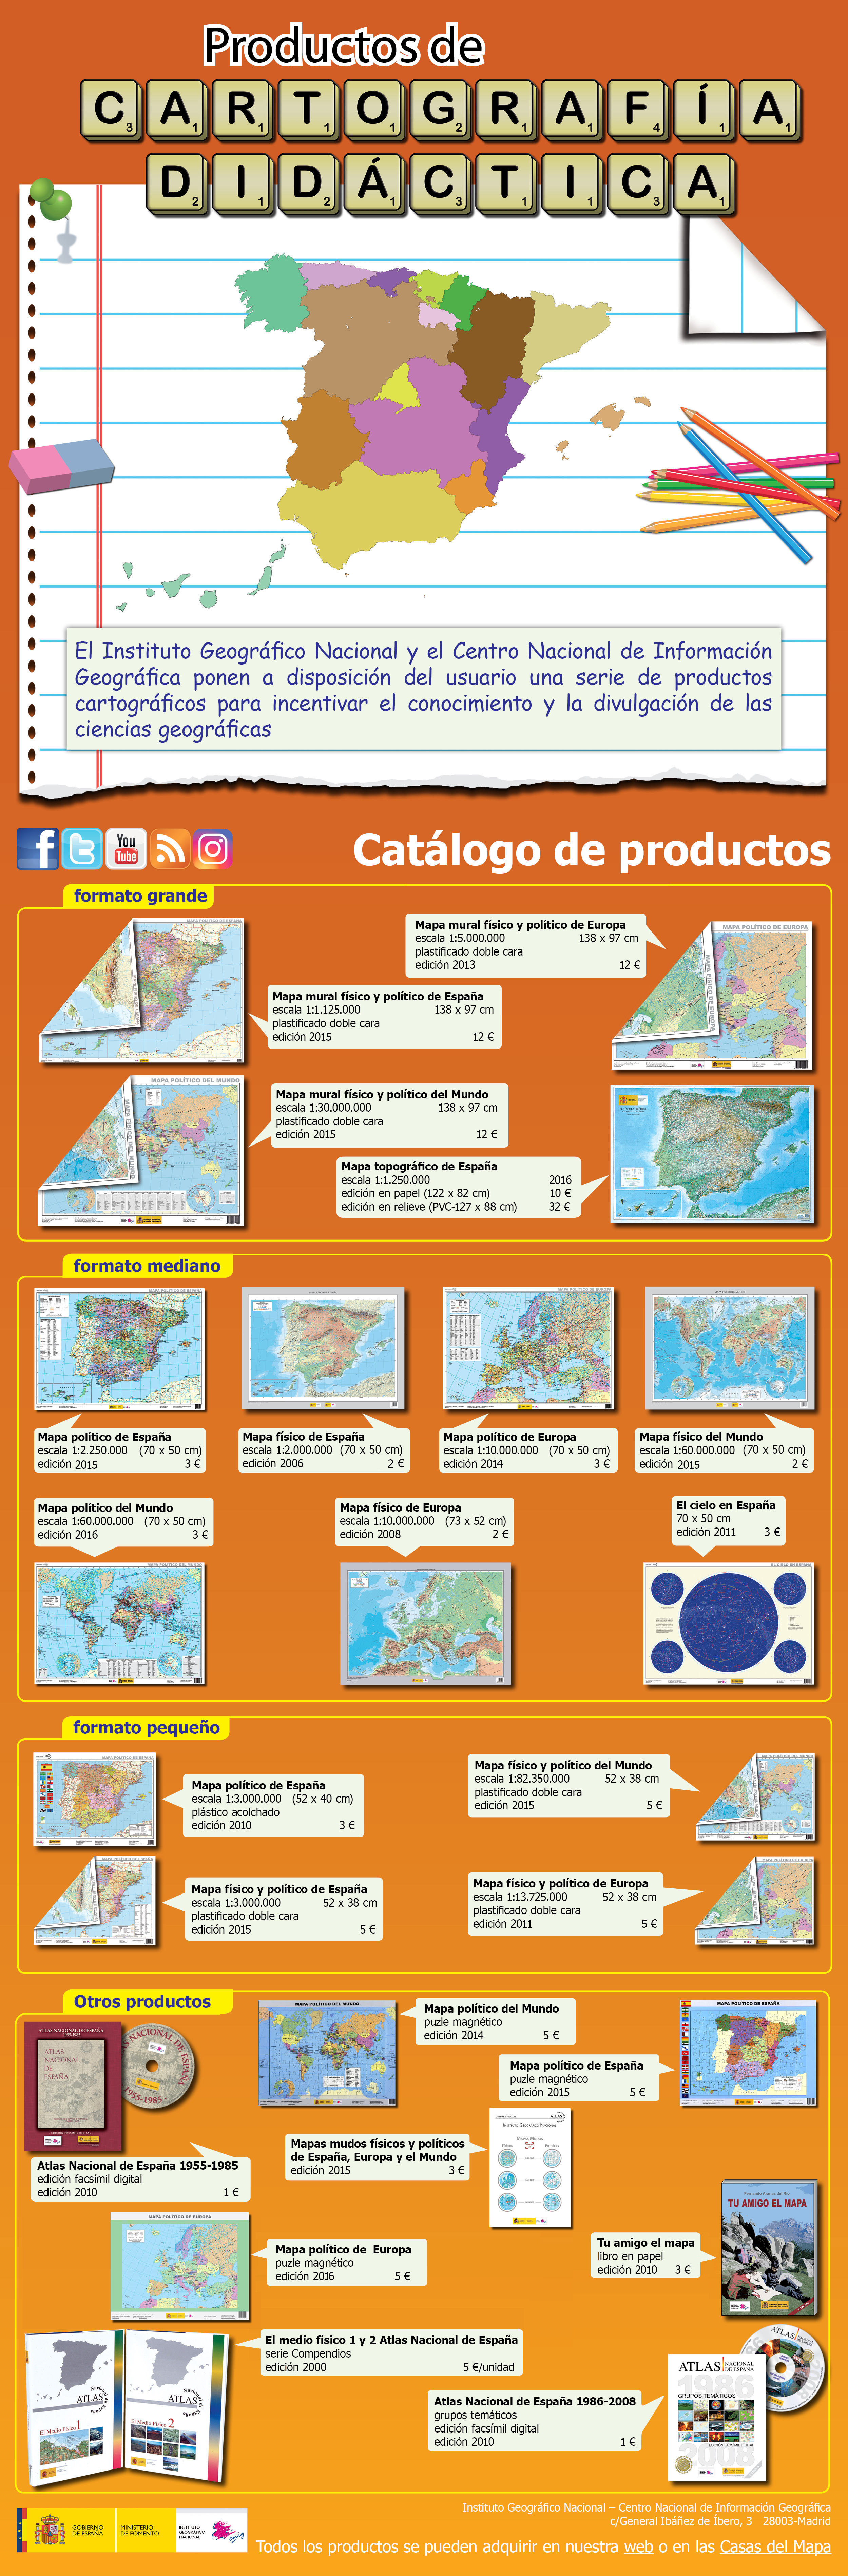 Cartografía didáctica